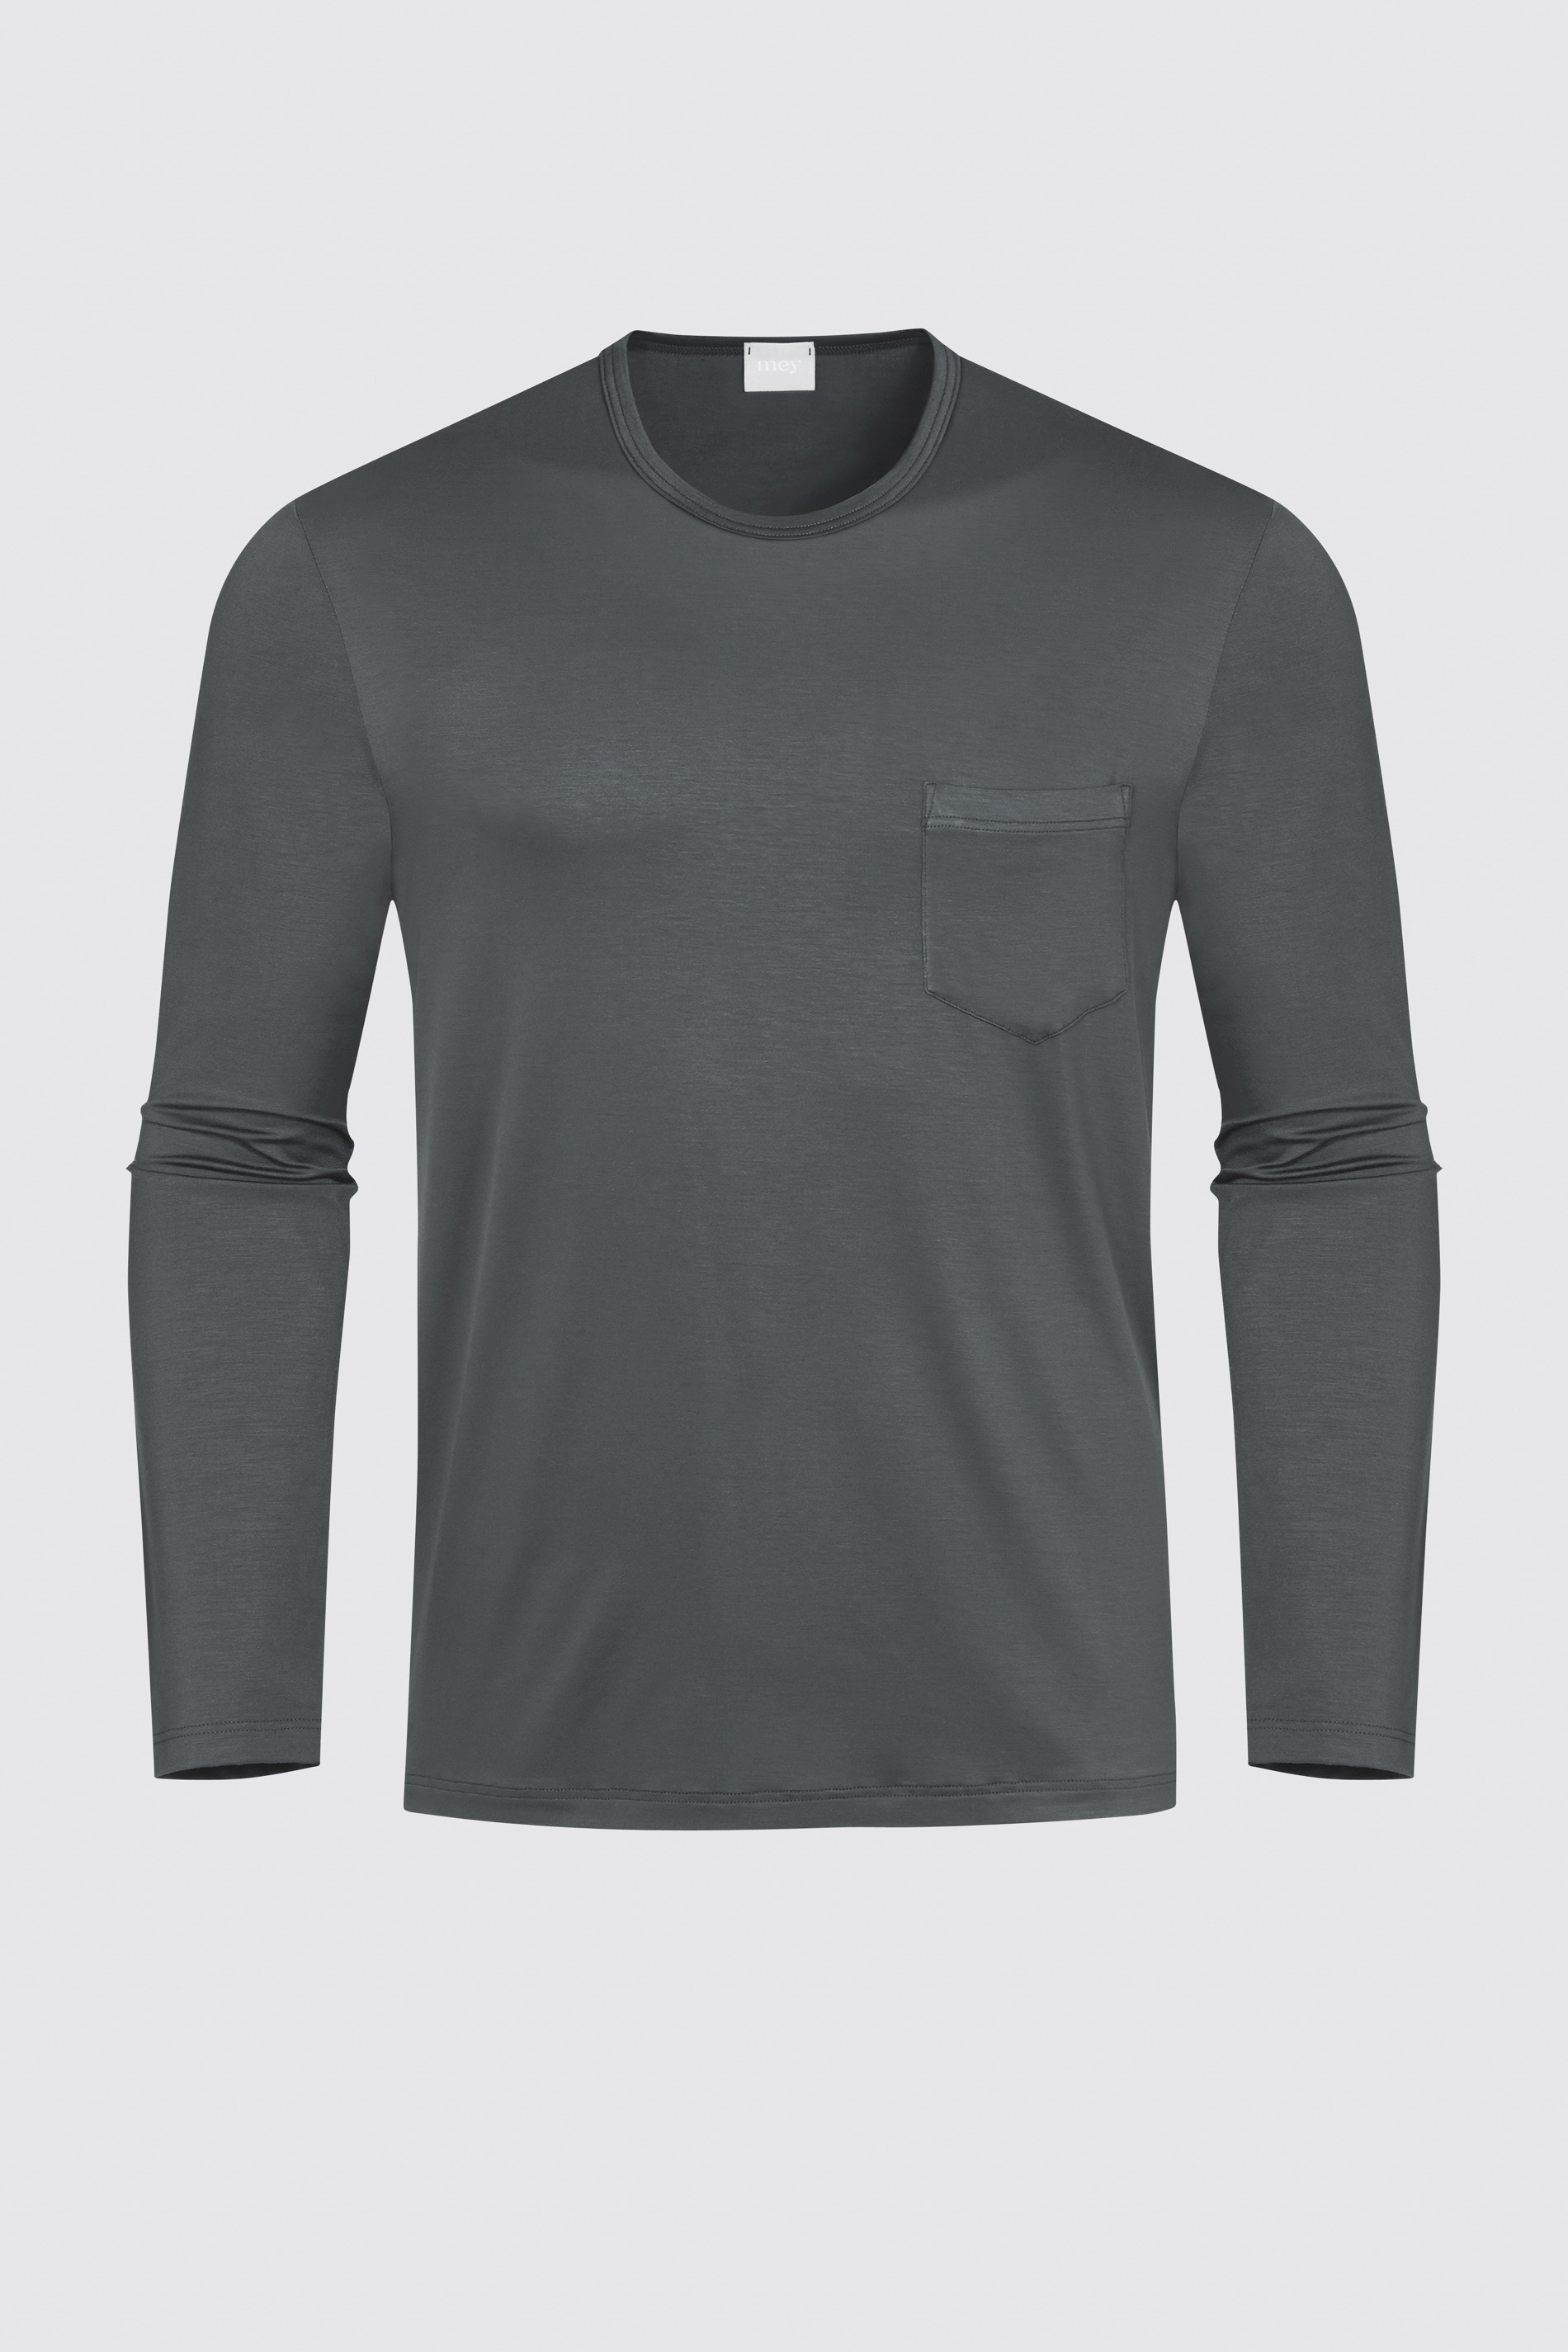 Homewear-shirt Stormy Grey Serie Jefferson Modal Uitknippen | mey®